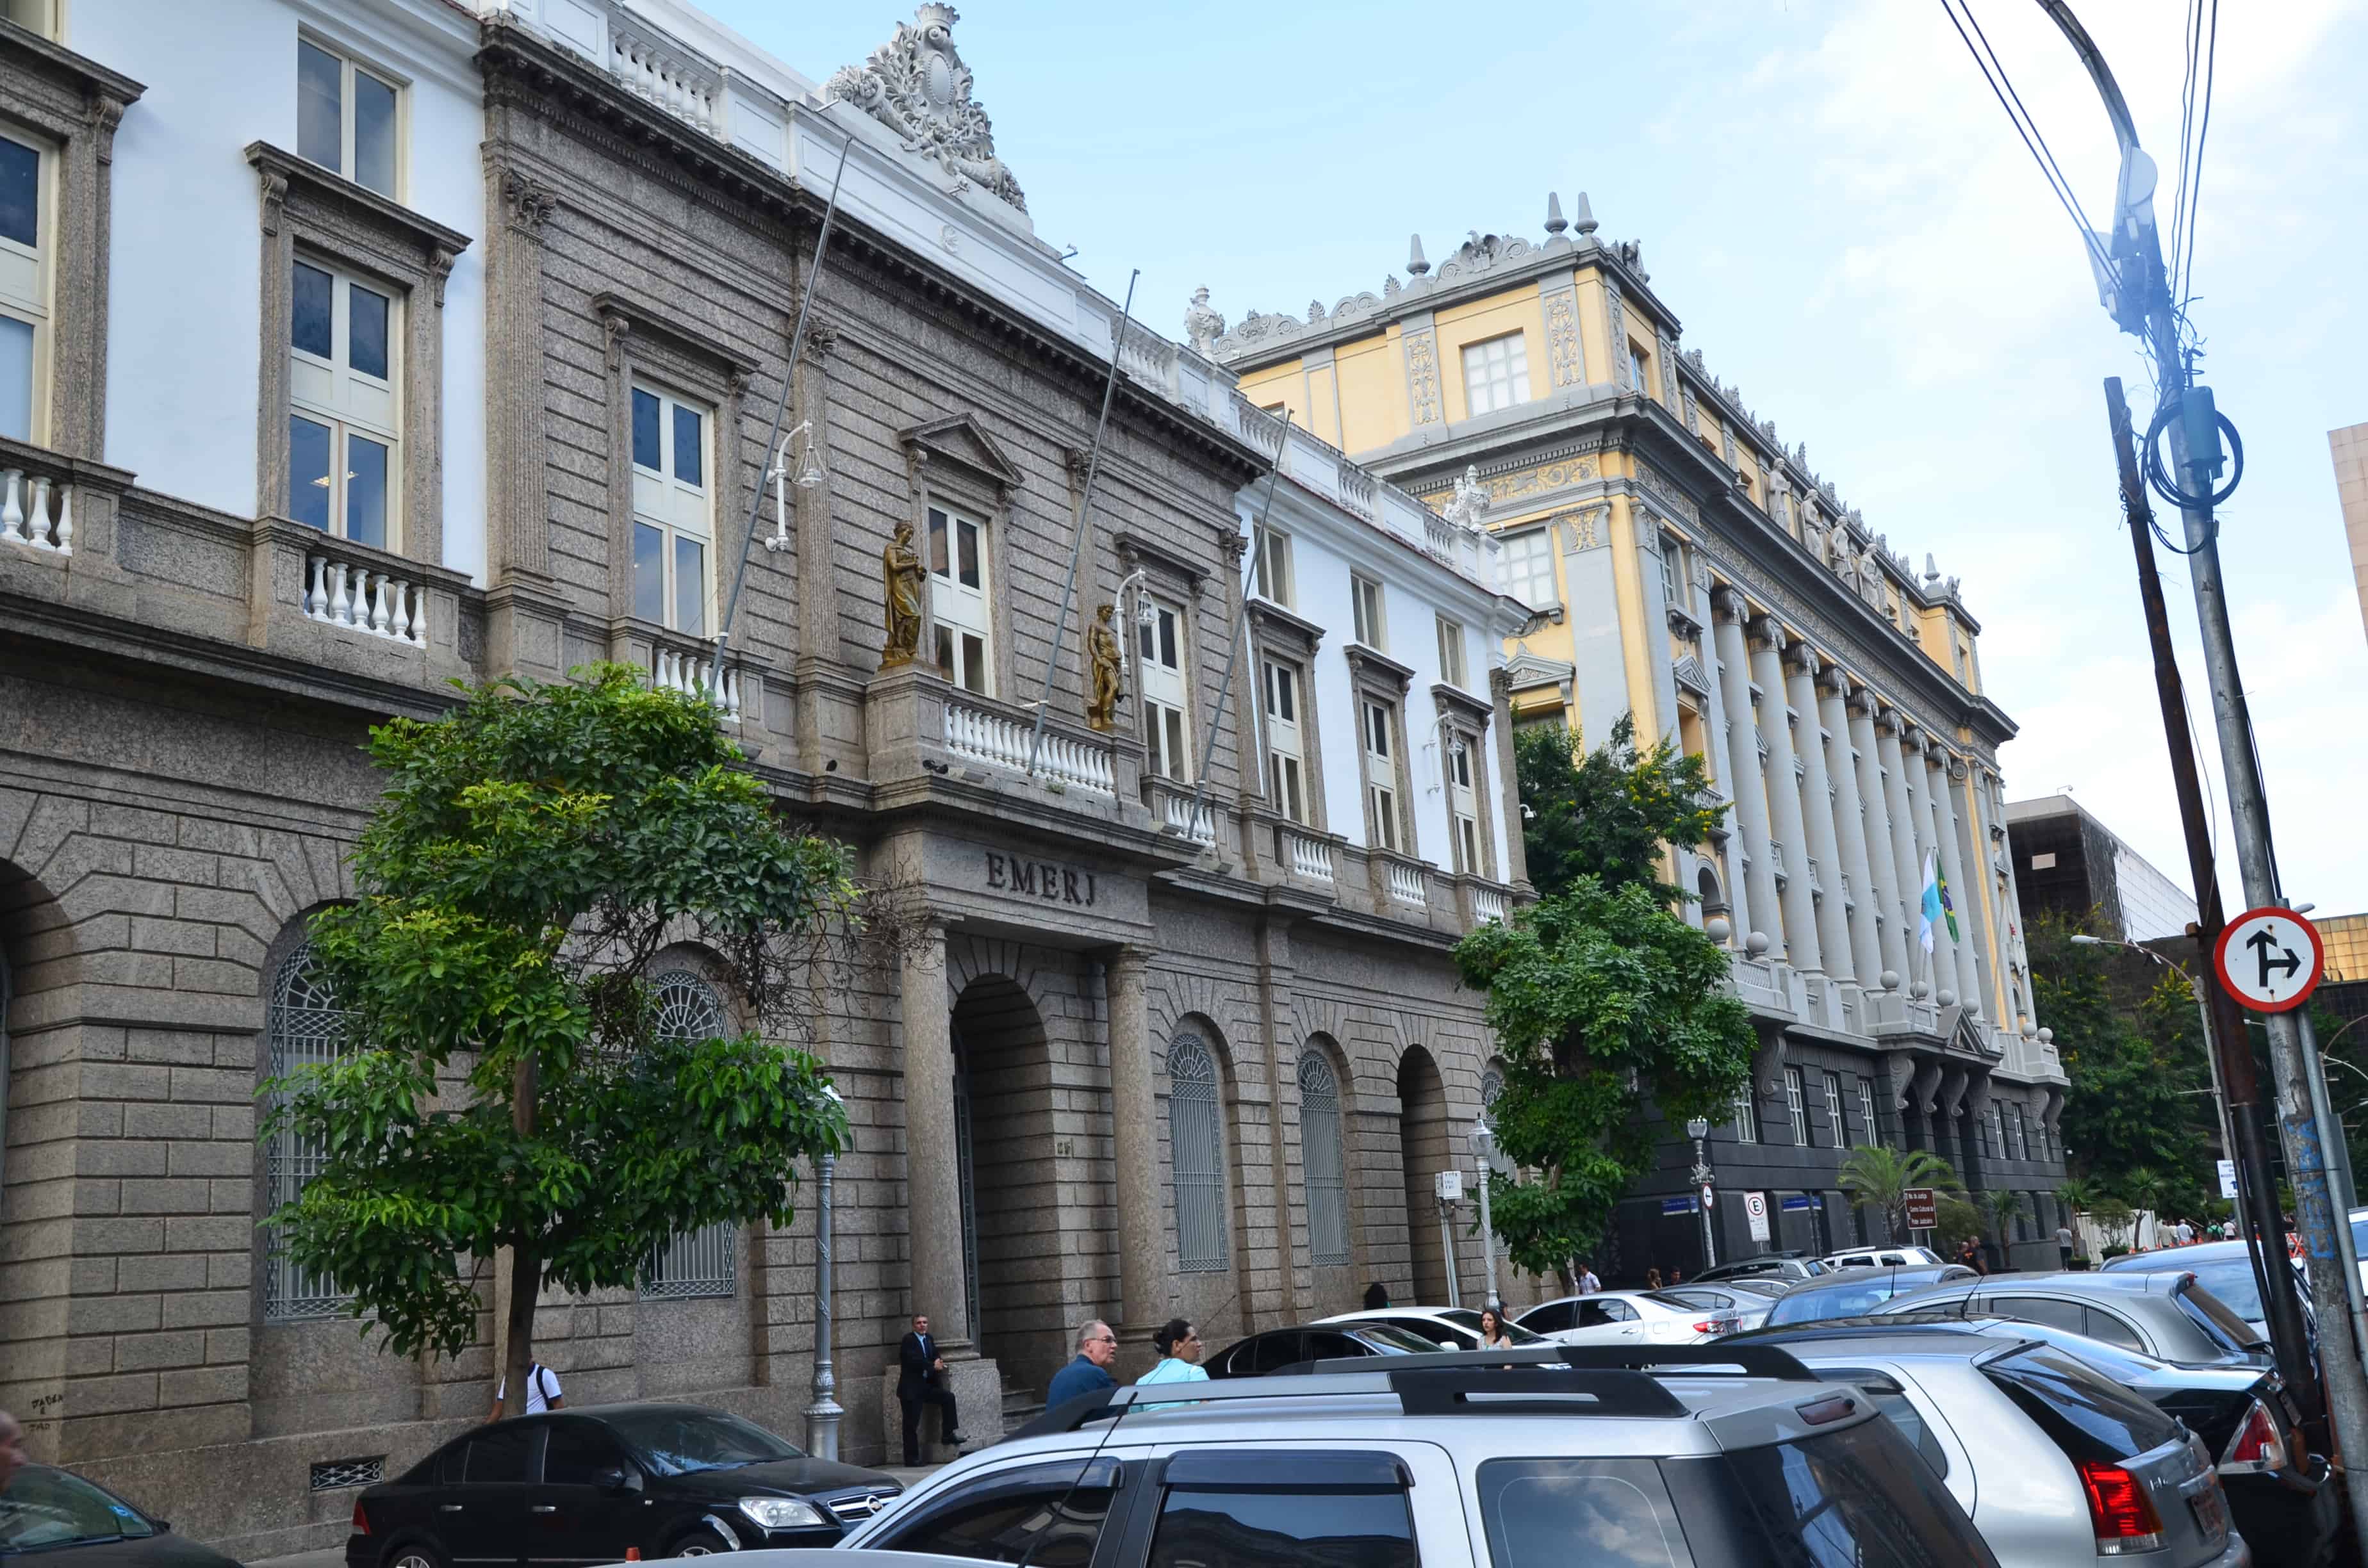 Procuradoria Geral do Estado do Rio de Janeiro in Rio de Janeiro, Brazil